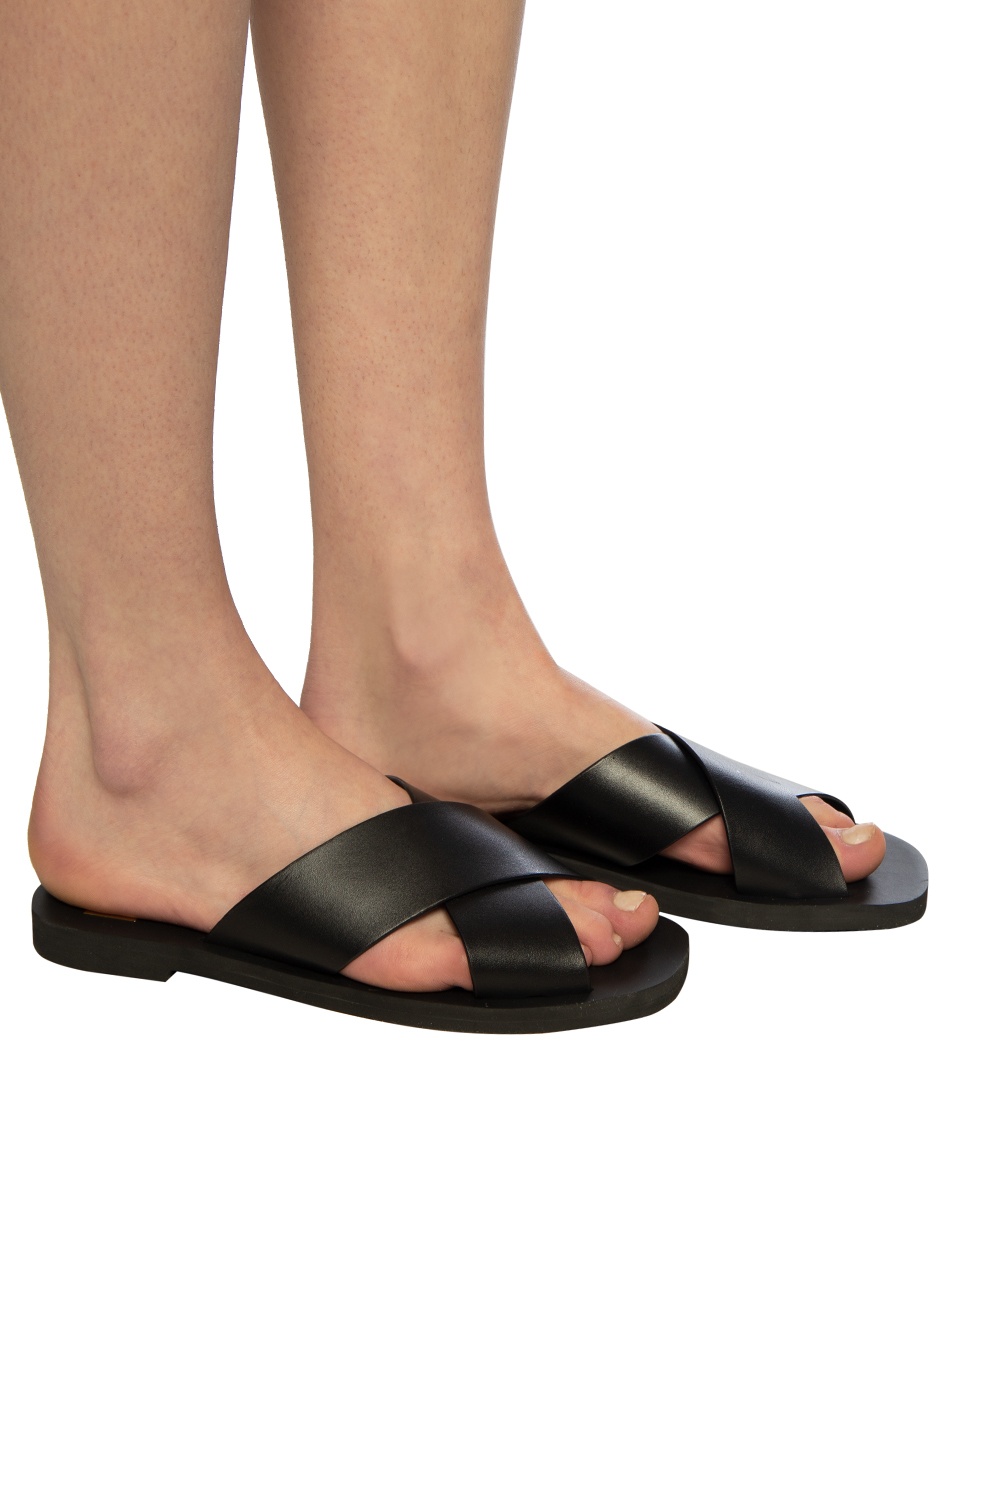 michael kors sandals mens 2015